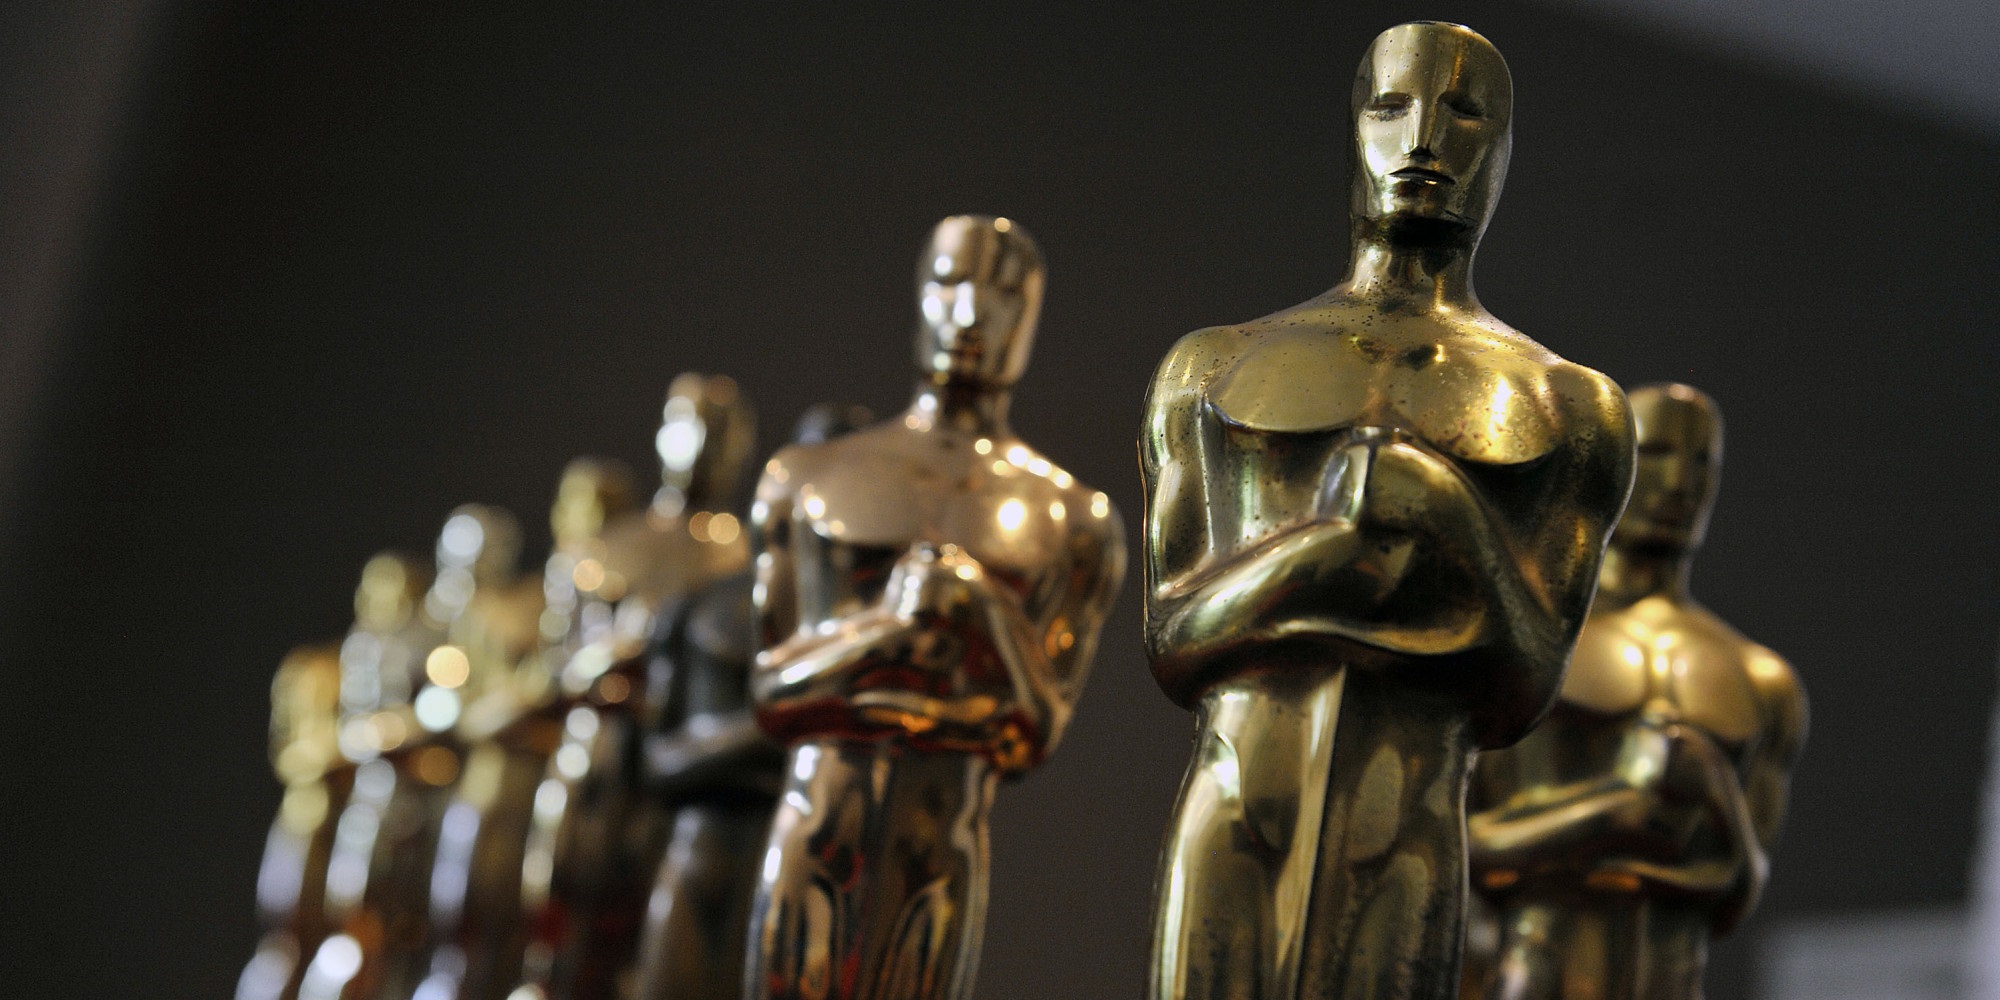 Oscar 2015 Nominees Announced